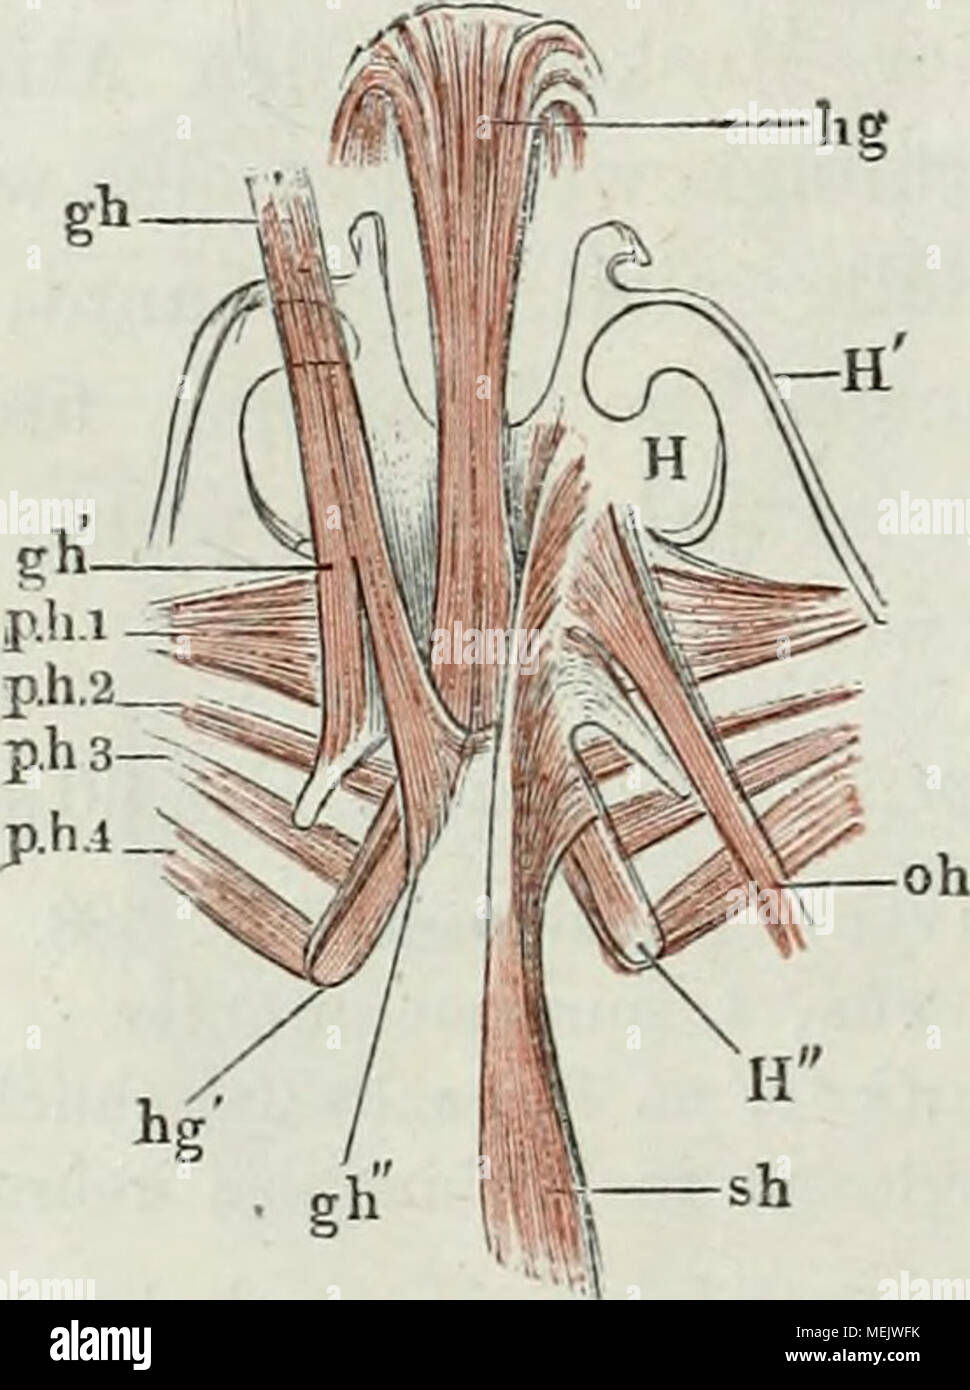 . Die Anatomie des Frosches: ein Handbuch,. snot Muskeln der Zunge imd-des-Zungen-beins von Rana esculenta, von unten. hg m. hyoglossus, vorn sich in die Zunge umschlagend. h g'hinterer Ursprung desselben. gh m. geniohyoideus. g K lateraler Ursprung. g h "medialer Ursprung desselben. oh m. omohyoideus. s h m. stemohyoideus. Vh1. 2. 3. Erster, zweiter, å, vierter m. petrohyoideus. U Zungenbeinköi" Pro. H' vorderes Hom. H" hintere Hom. Stockfoto